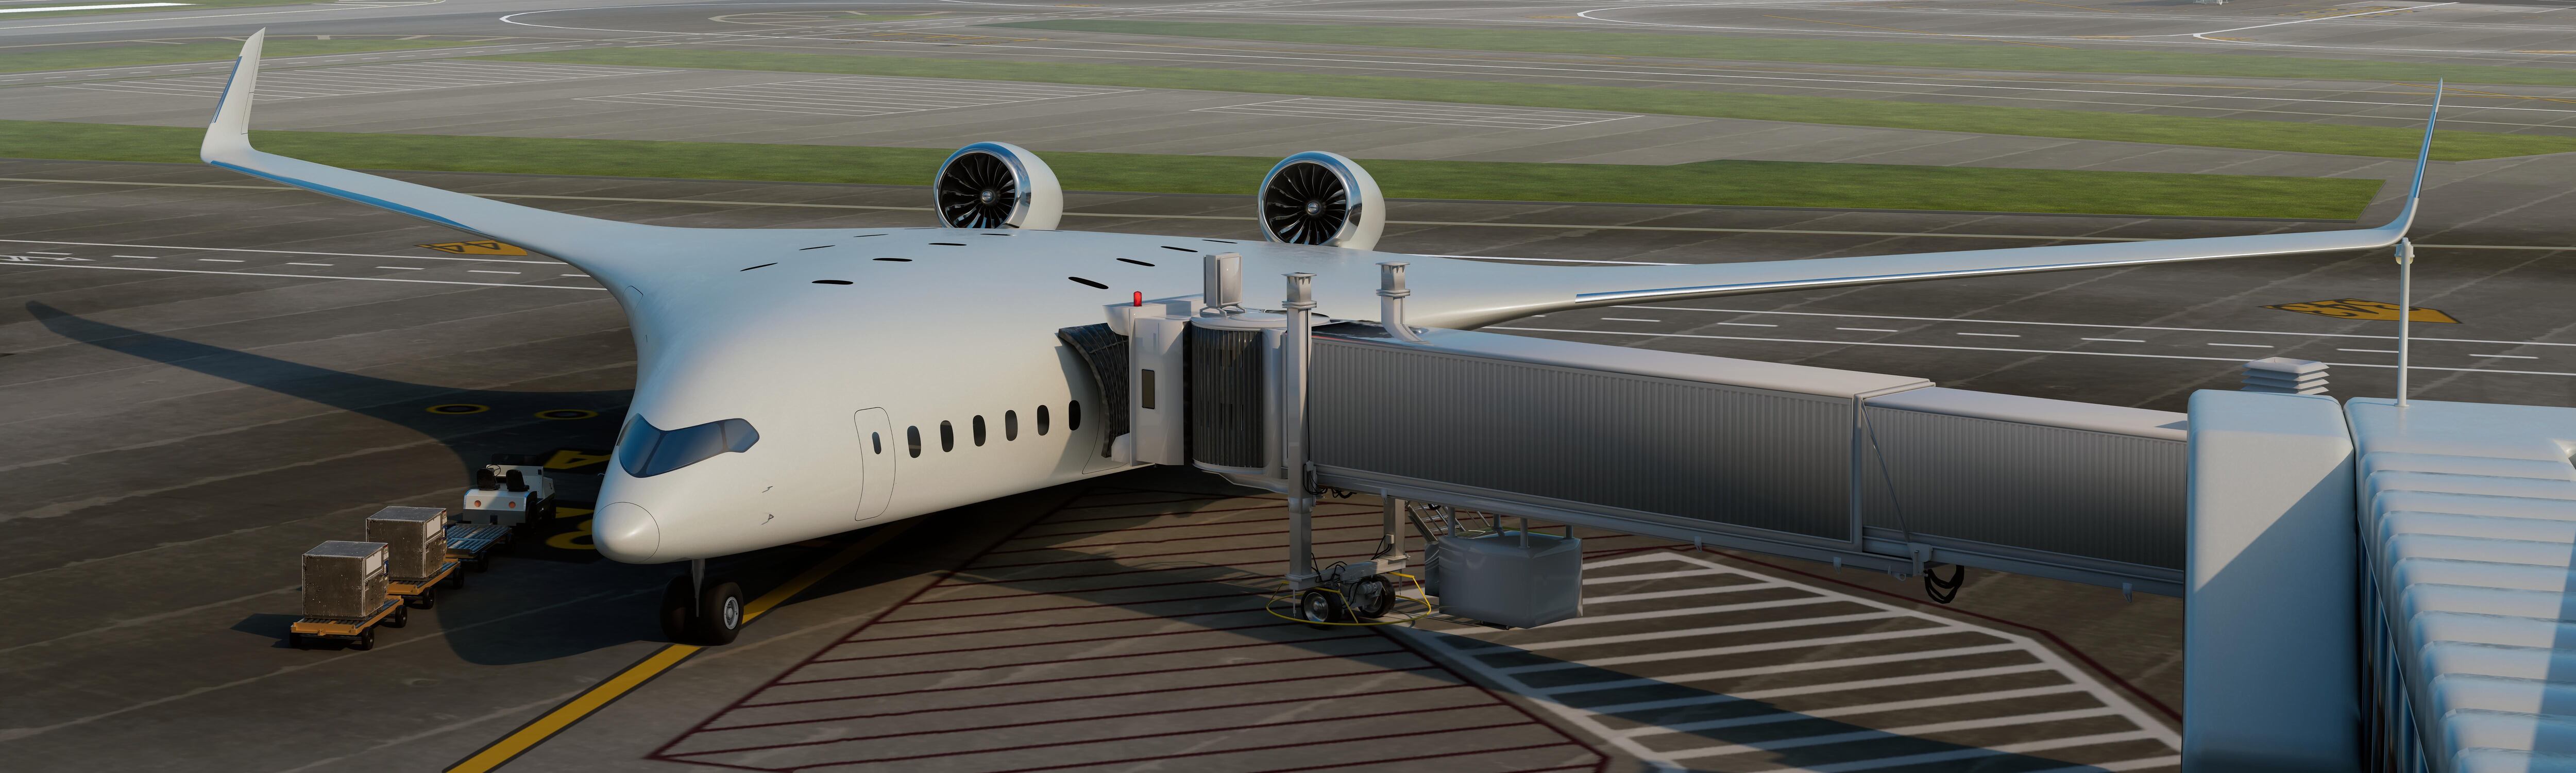 JetZero debe determinar si Pathfinder afectará el espacio de estacionamiento del aeropuerto y cómo lo hará.